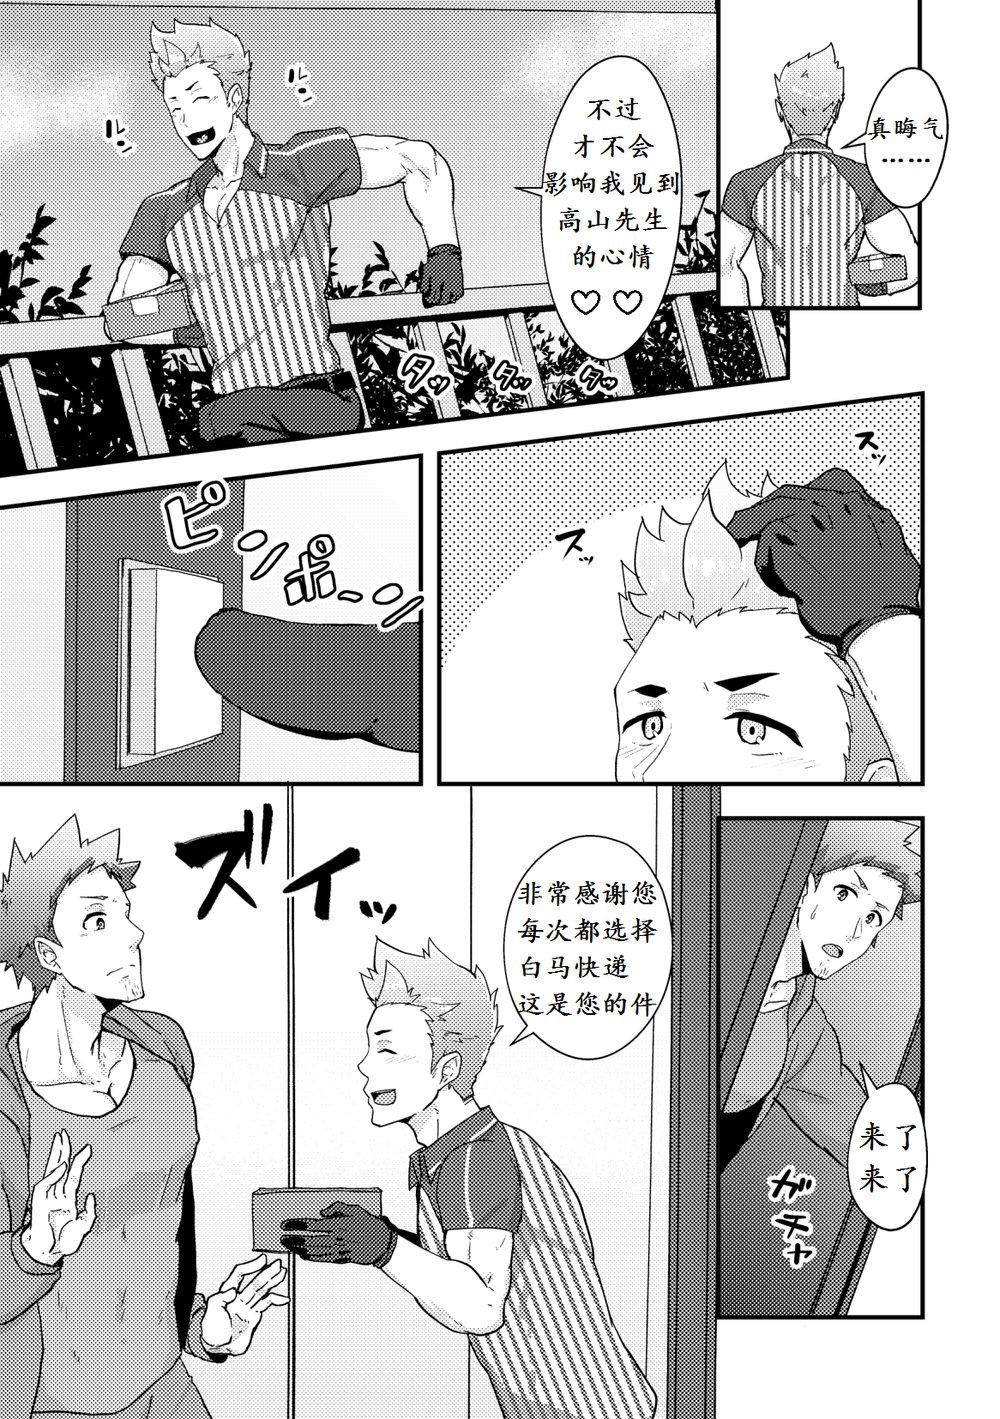 Sologirl Haruyasumi no Homo - Original 19yo - Page 11